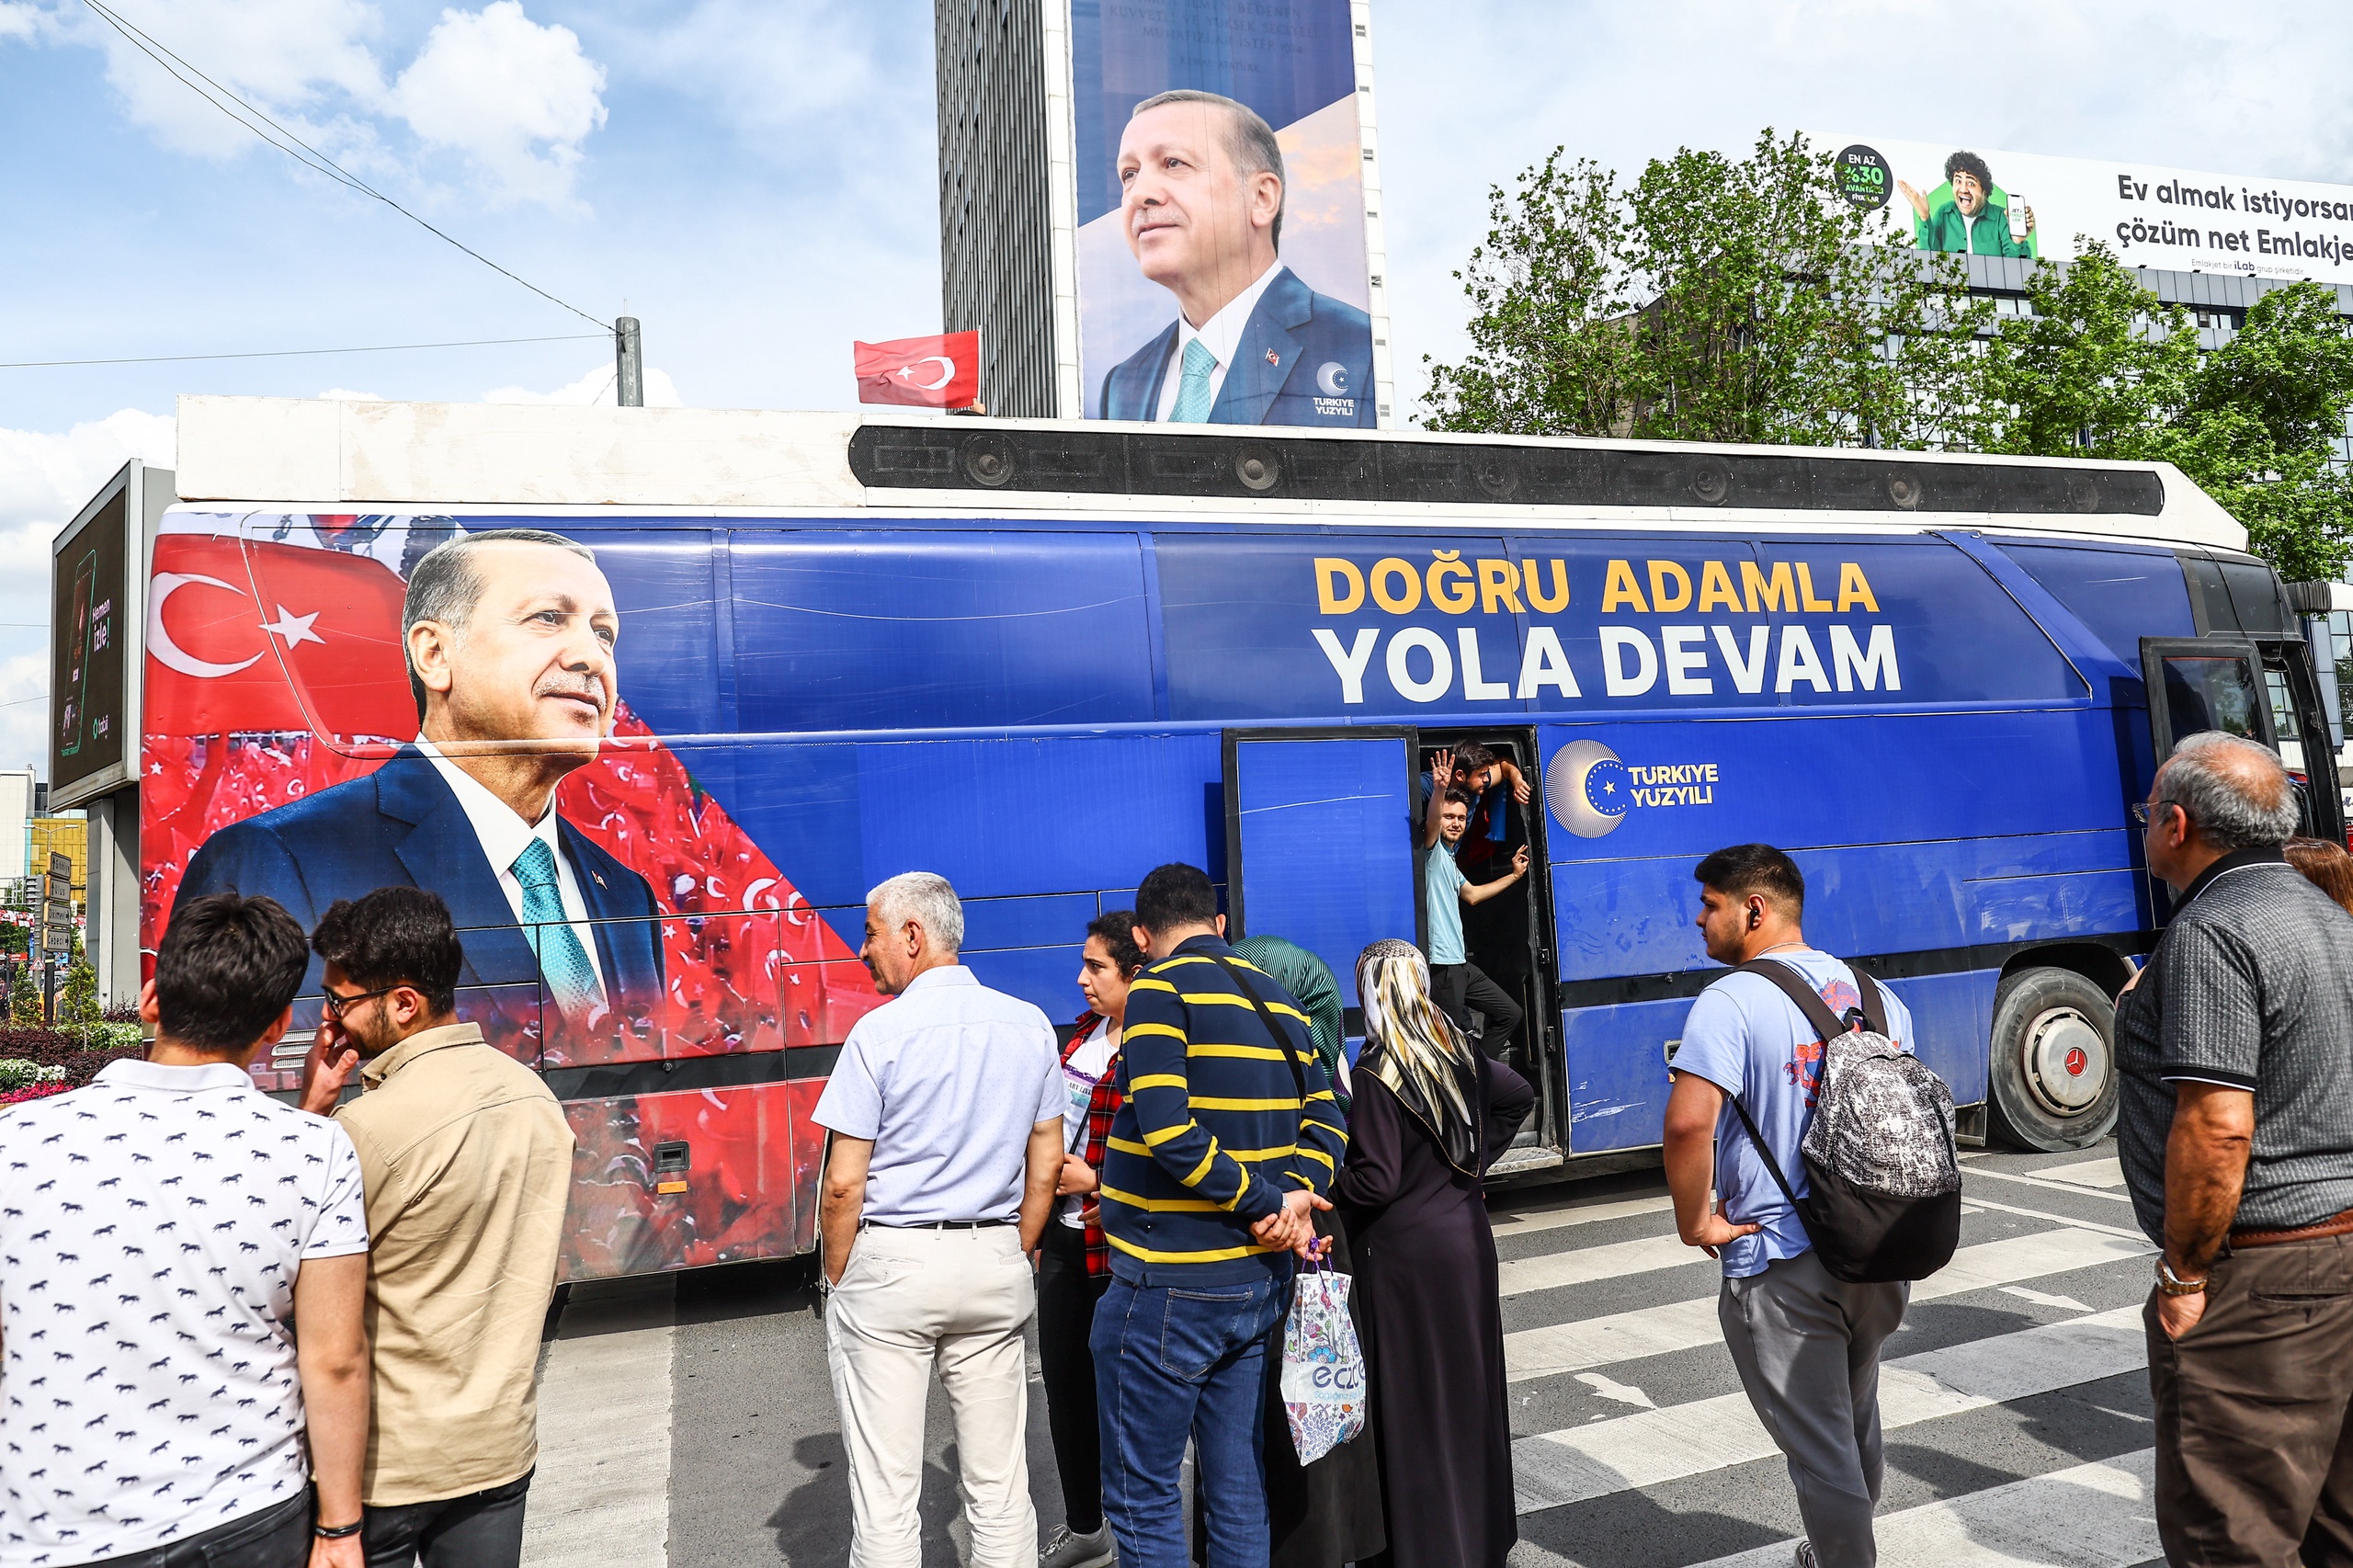 In Turkije worden de laatste campagneactiviteiten voor de tweede ronde van de presidentsverkiezingen afgerond. Oppositieleider Kemal Kilicdaroglu hield zaterdagmiddag nog een rally in Ankara. President Recep Tayyip Erdogan, die op voorsprong staat in de peilingen, bracht in Istanbul hulde aan zijn in 1961 geëxecuteerde islamitische voorganger Adnan Menderes, in een laatste poging zijn achterban te mobiliseren.